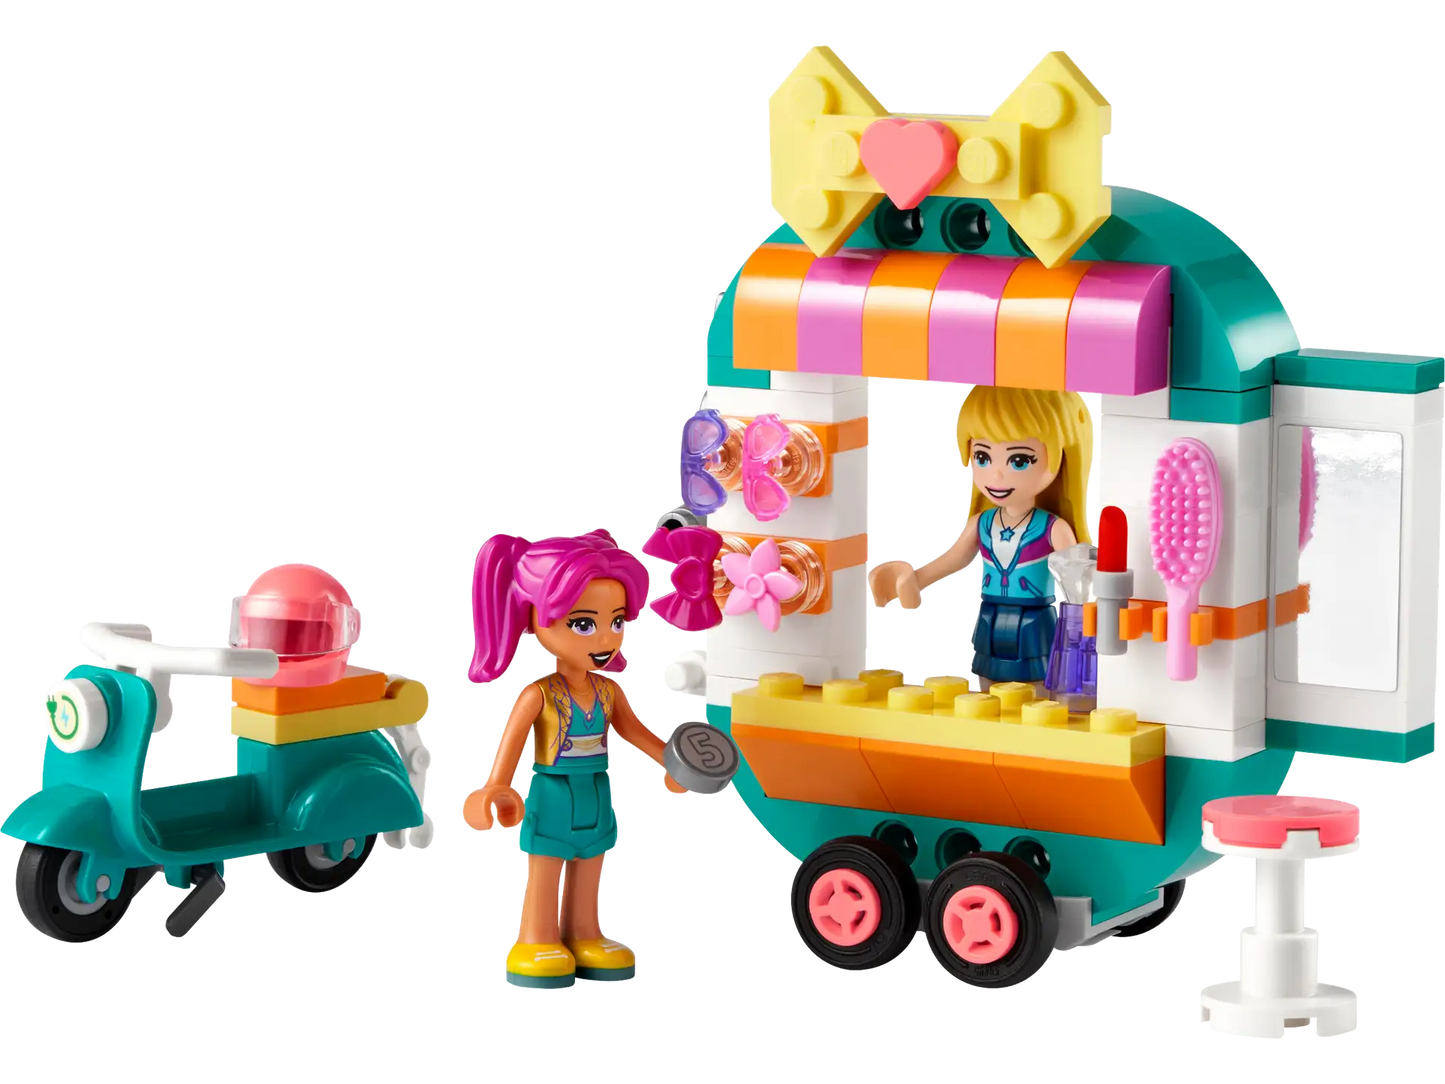 Mobile Boutique Lego Set